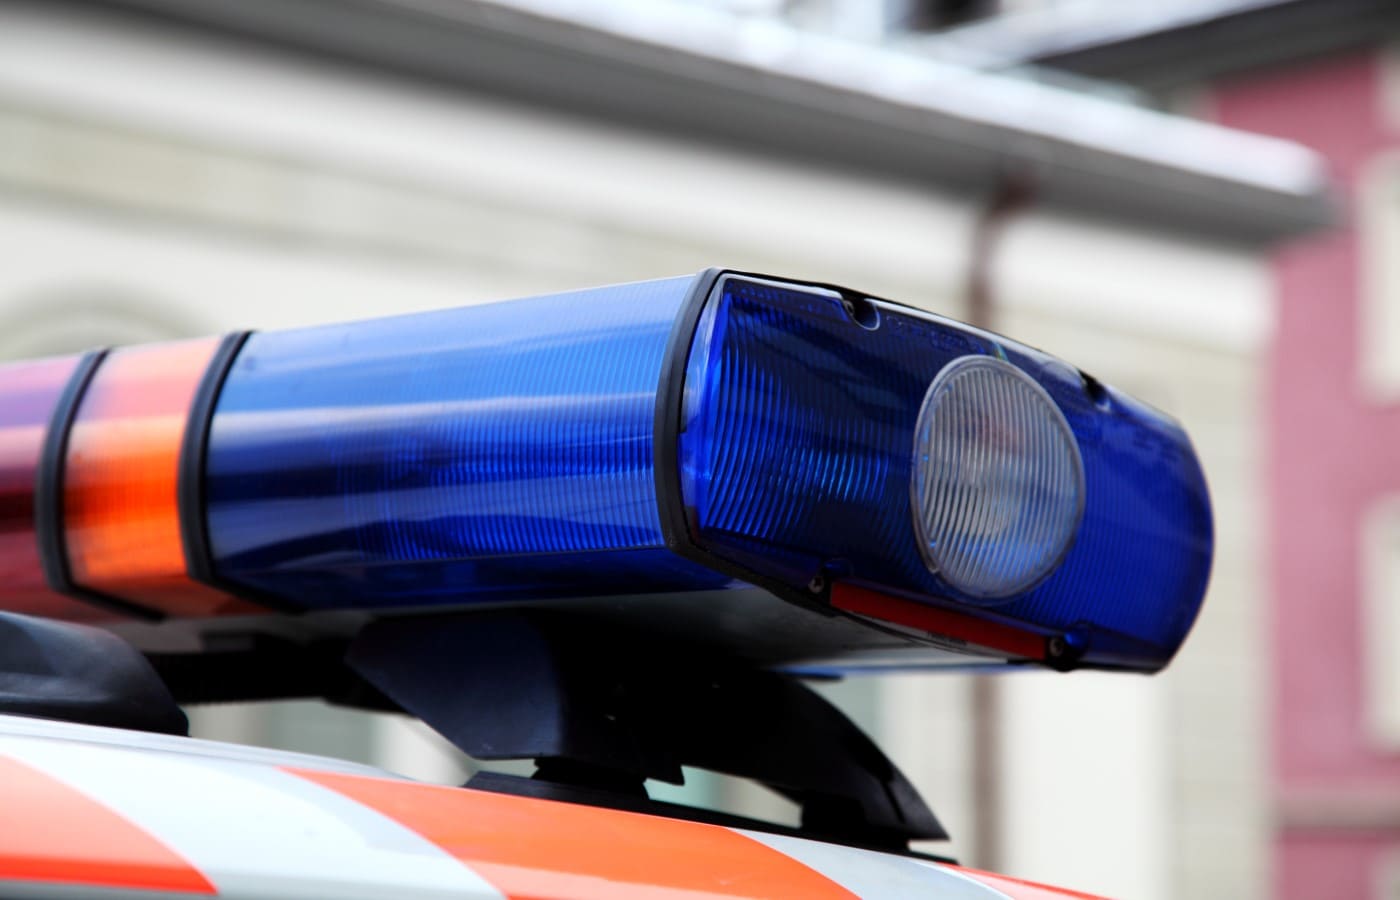 Autofahrer festgenommen: 31-jähriger Mann verursacht mehrere Unfälle in Luzern und im Kanton Zürich